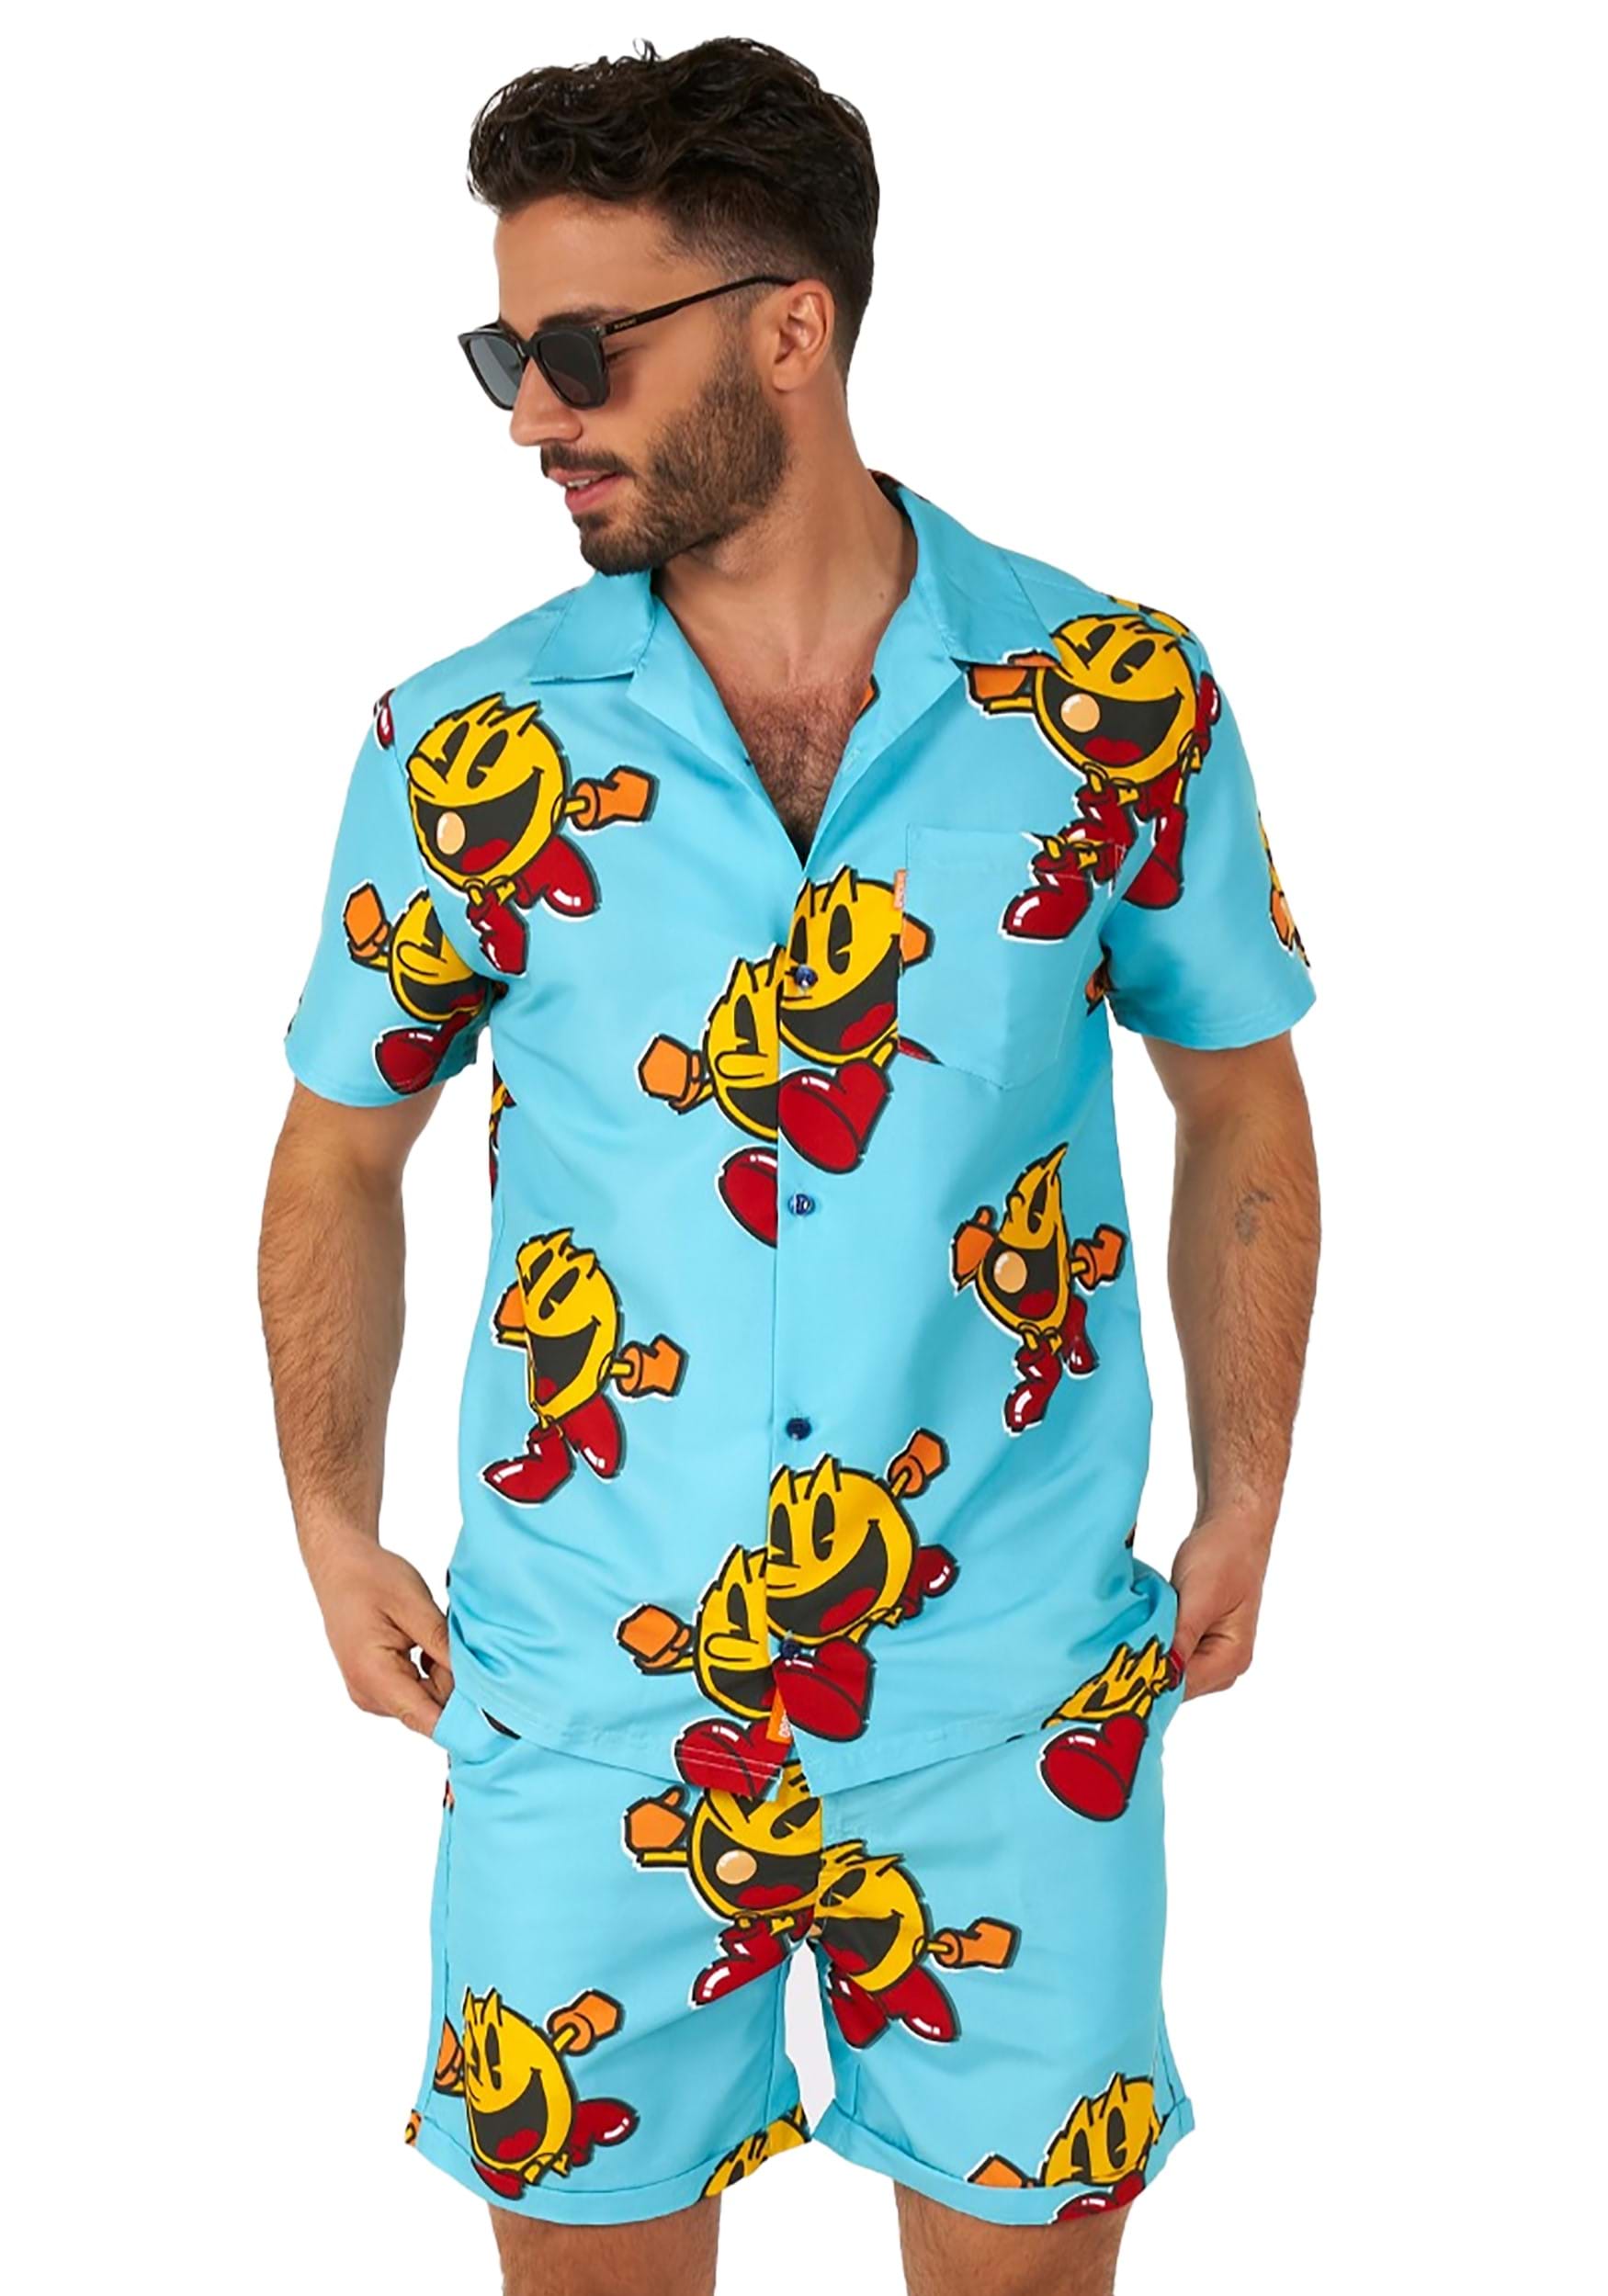 Mens Pac-Man Waka Waka Swimsuit and Shirt